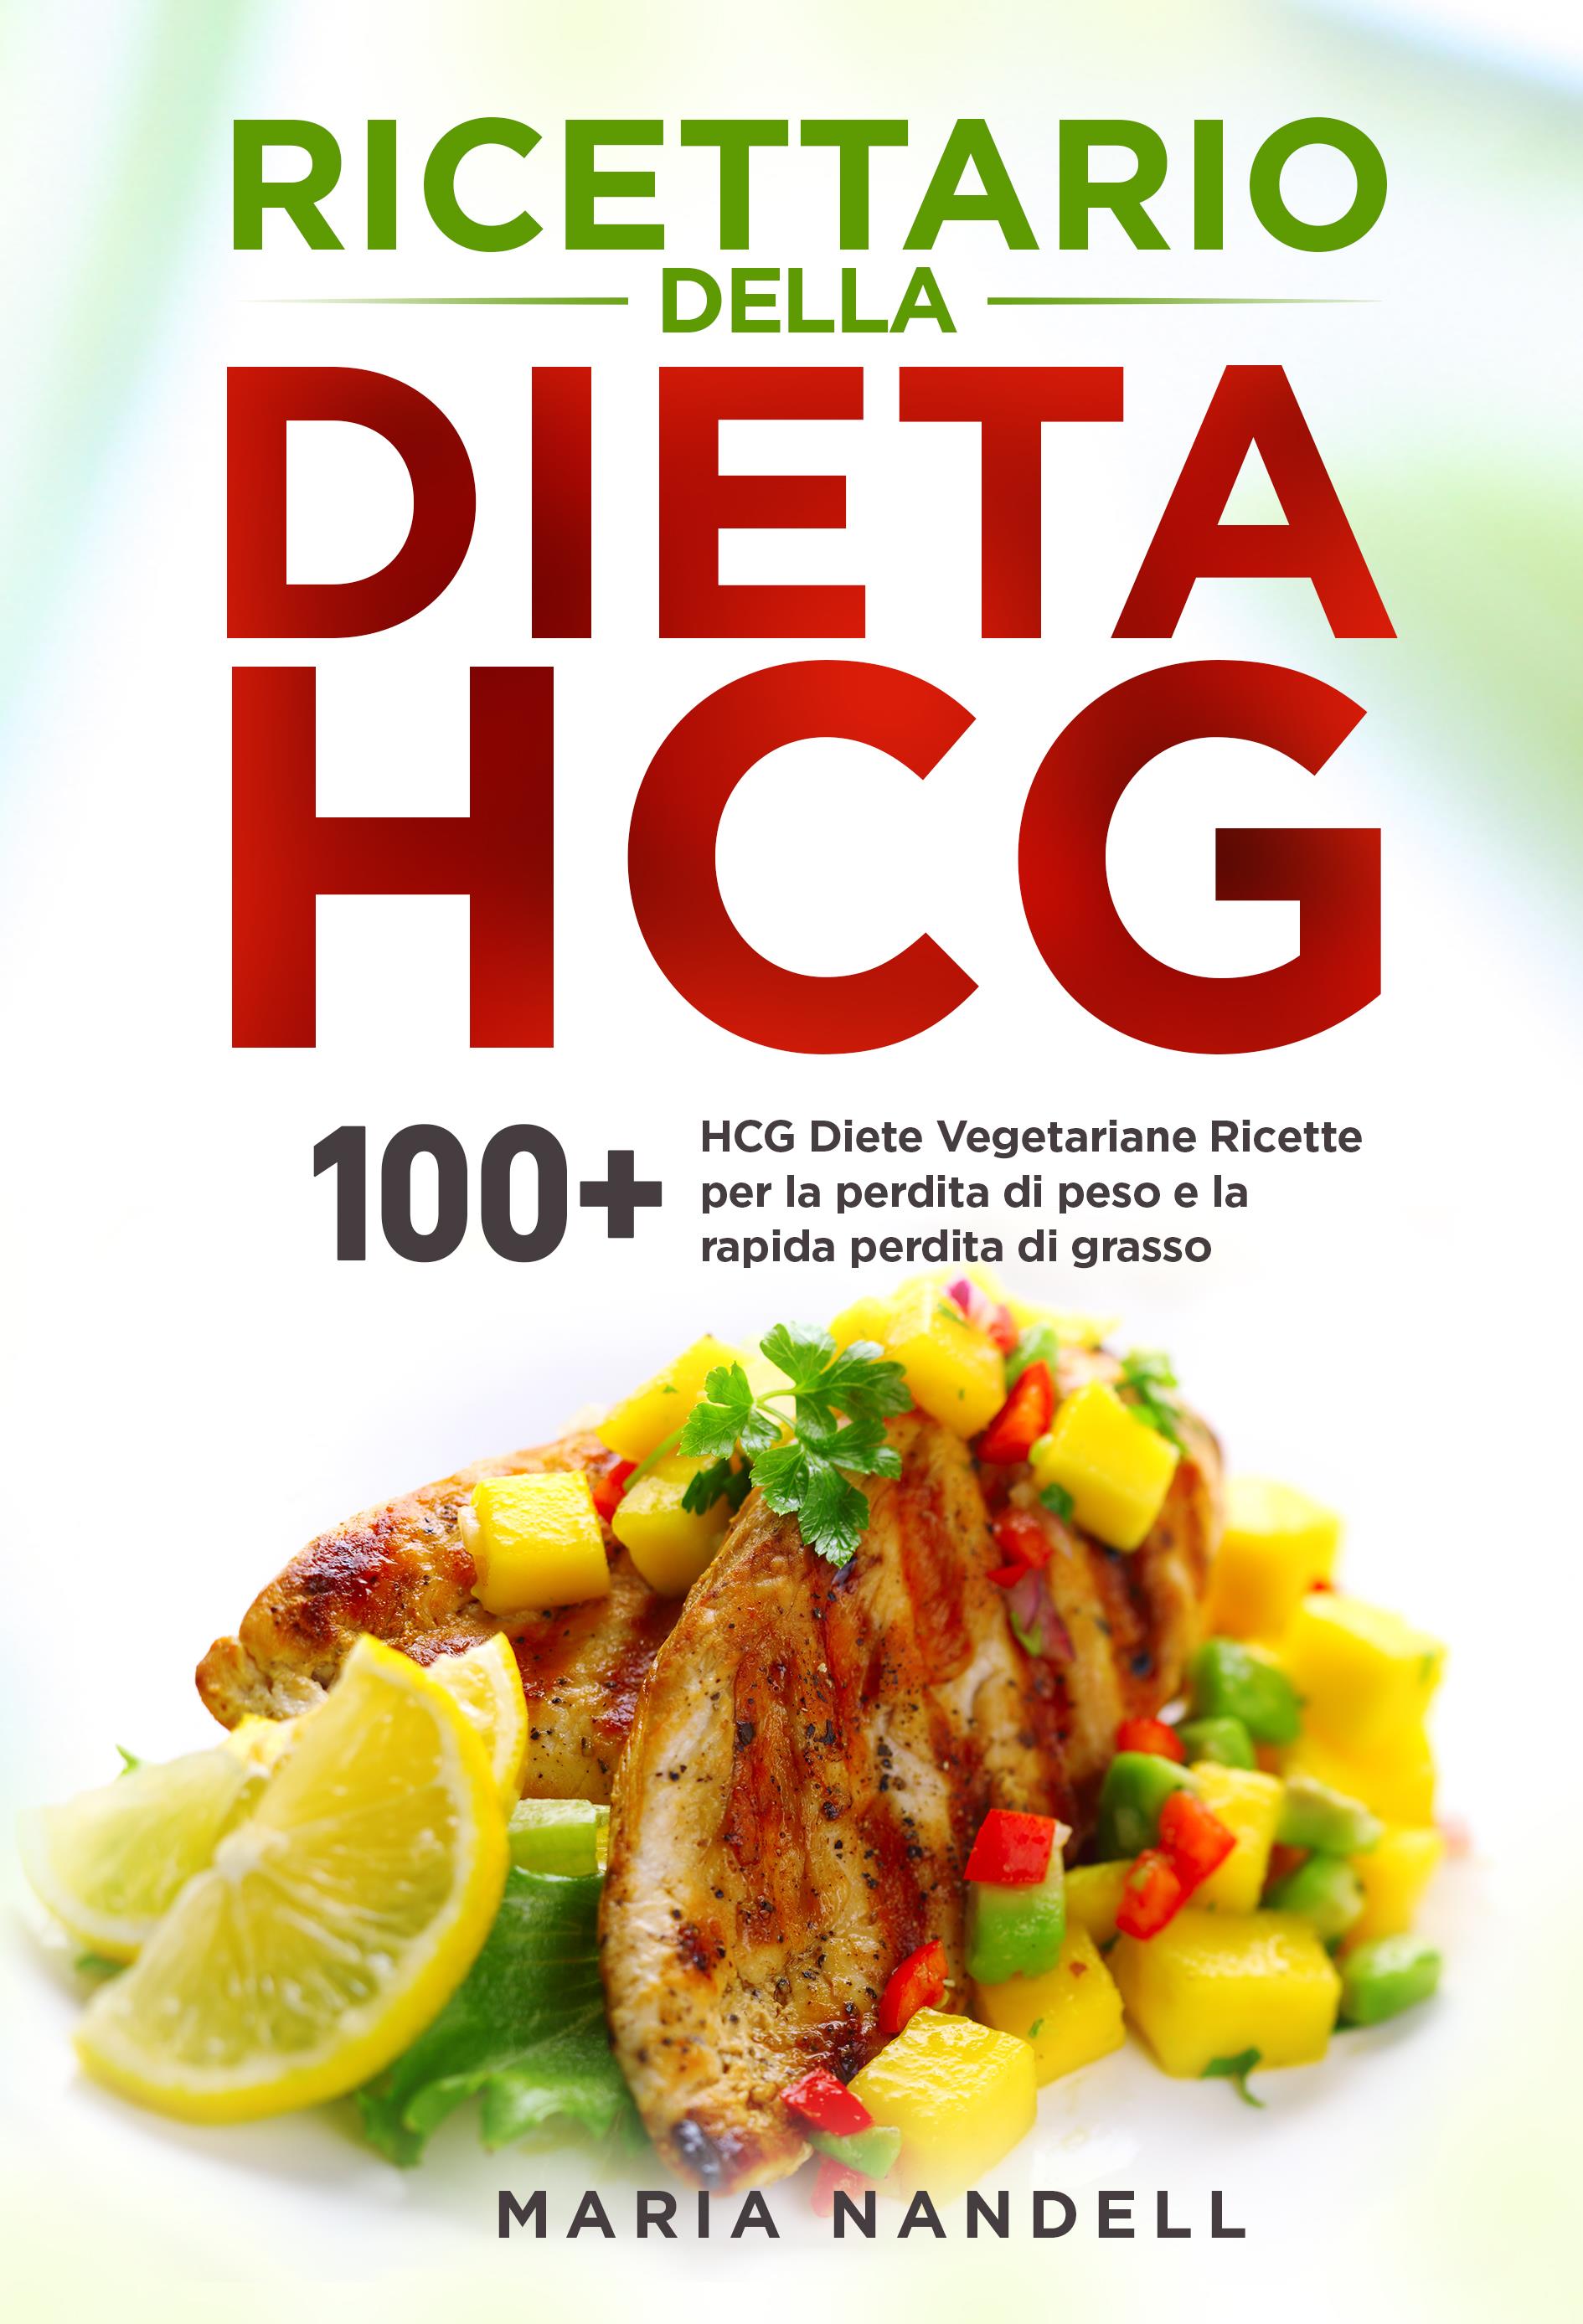 Ricettario della dieta HCG. 100+ HCG Diete Vegetariane Ricette per la perdita di peso e la rapida perdita di grasso